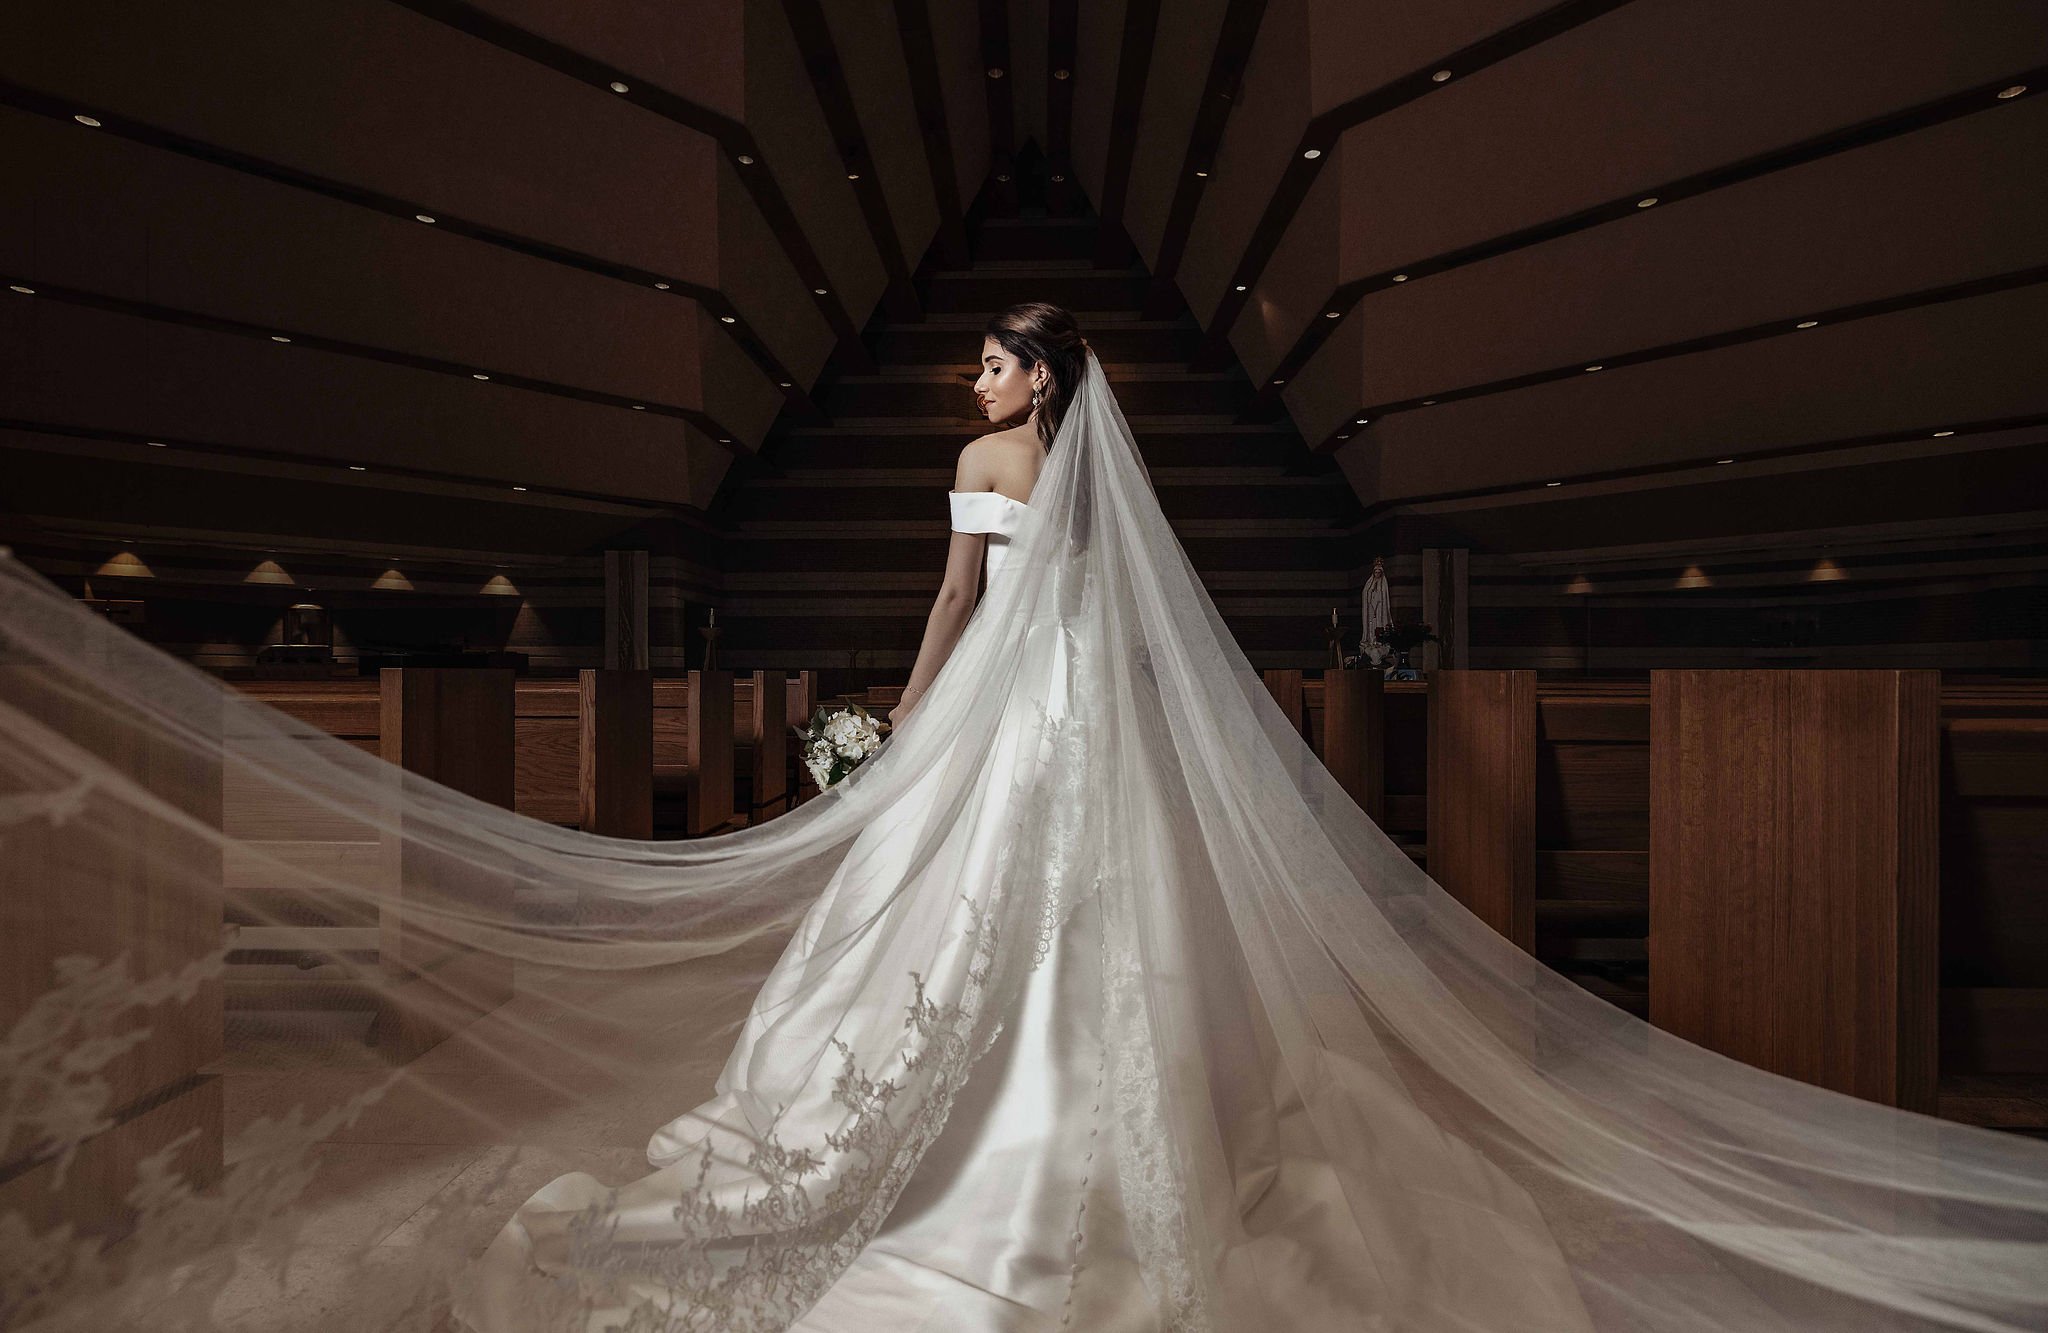 Dallas bride - wedding venue - veil.jpg